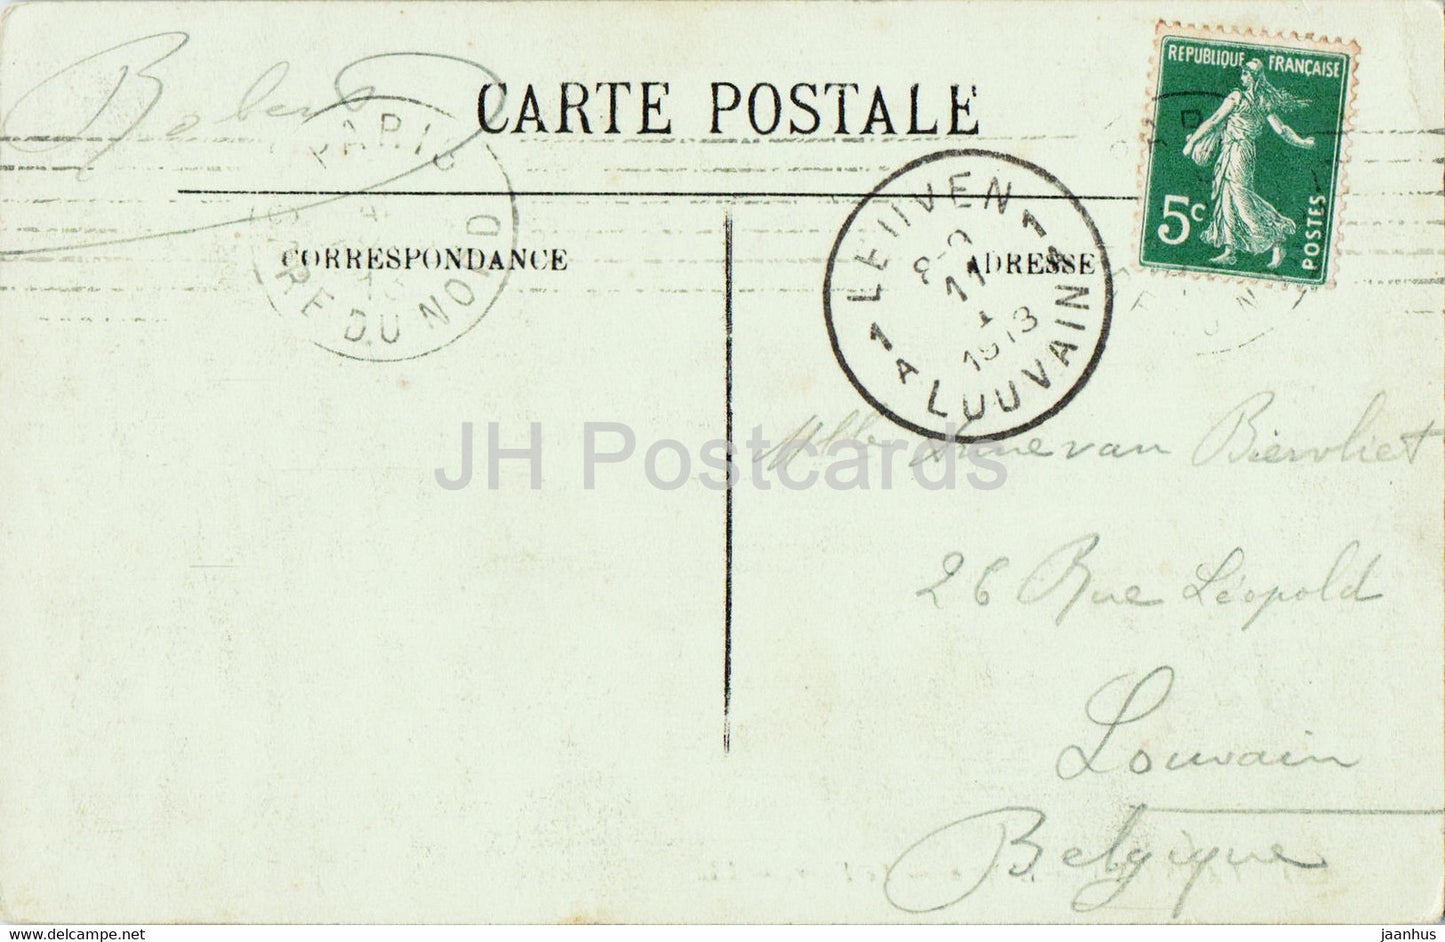 Paris - L'Opéra - Le Foyer - théâtre - 990 - carte postale ancienne - 1913 - France - occasion